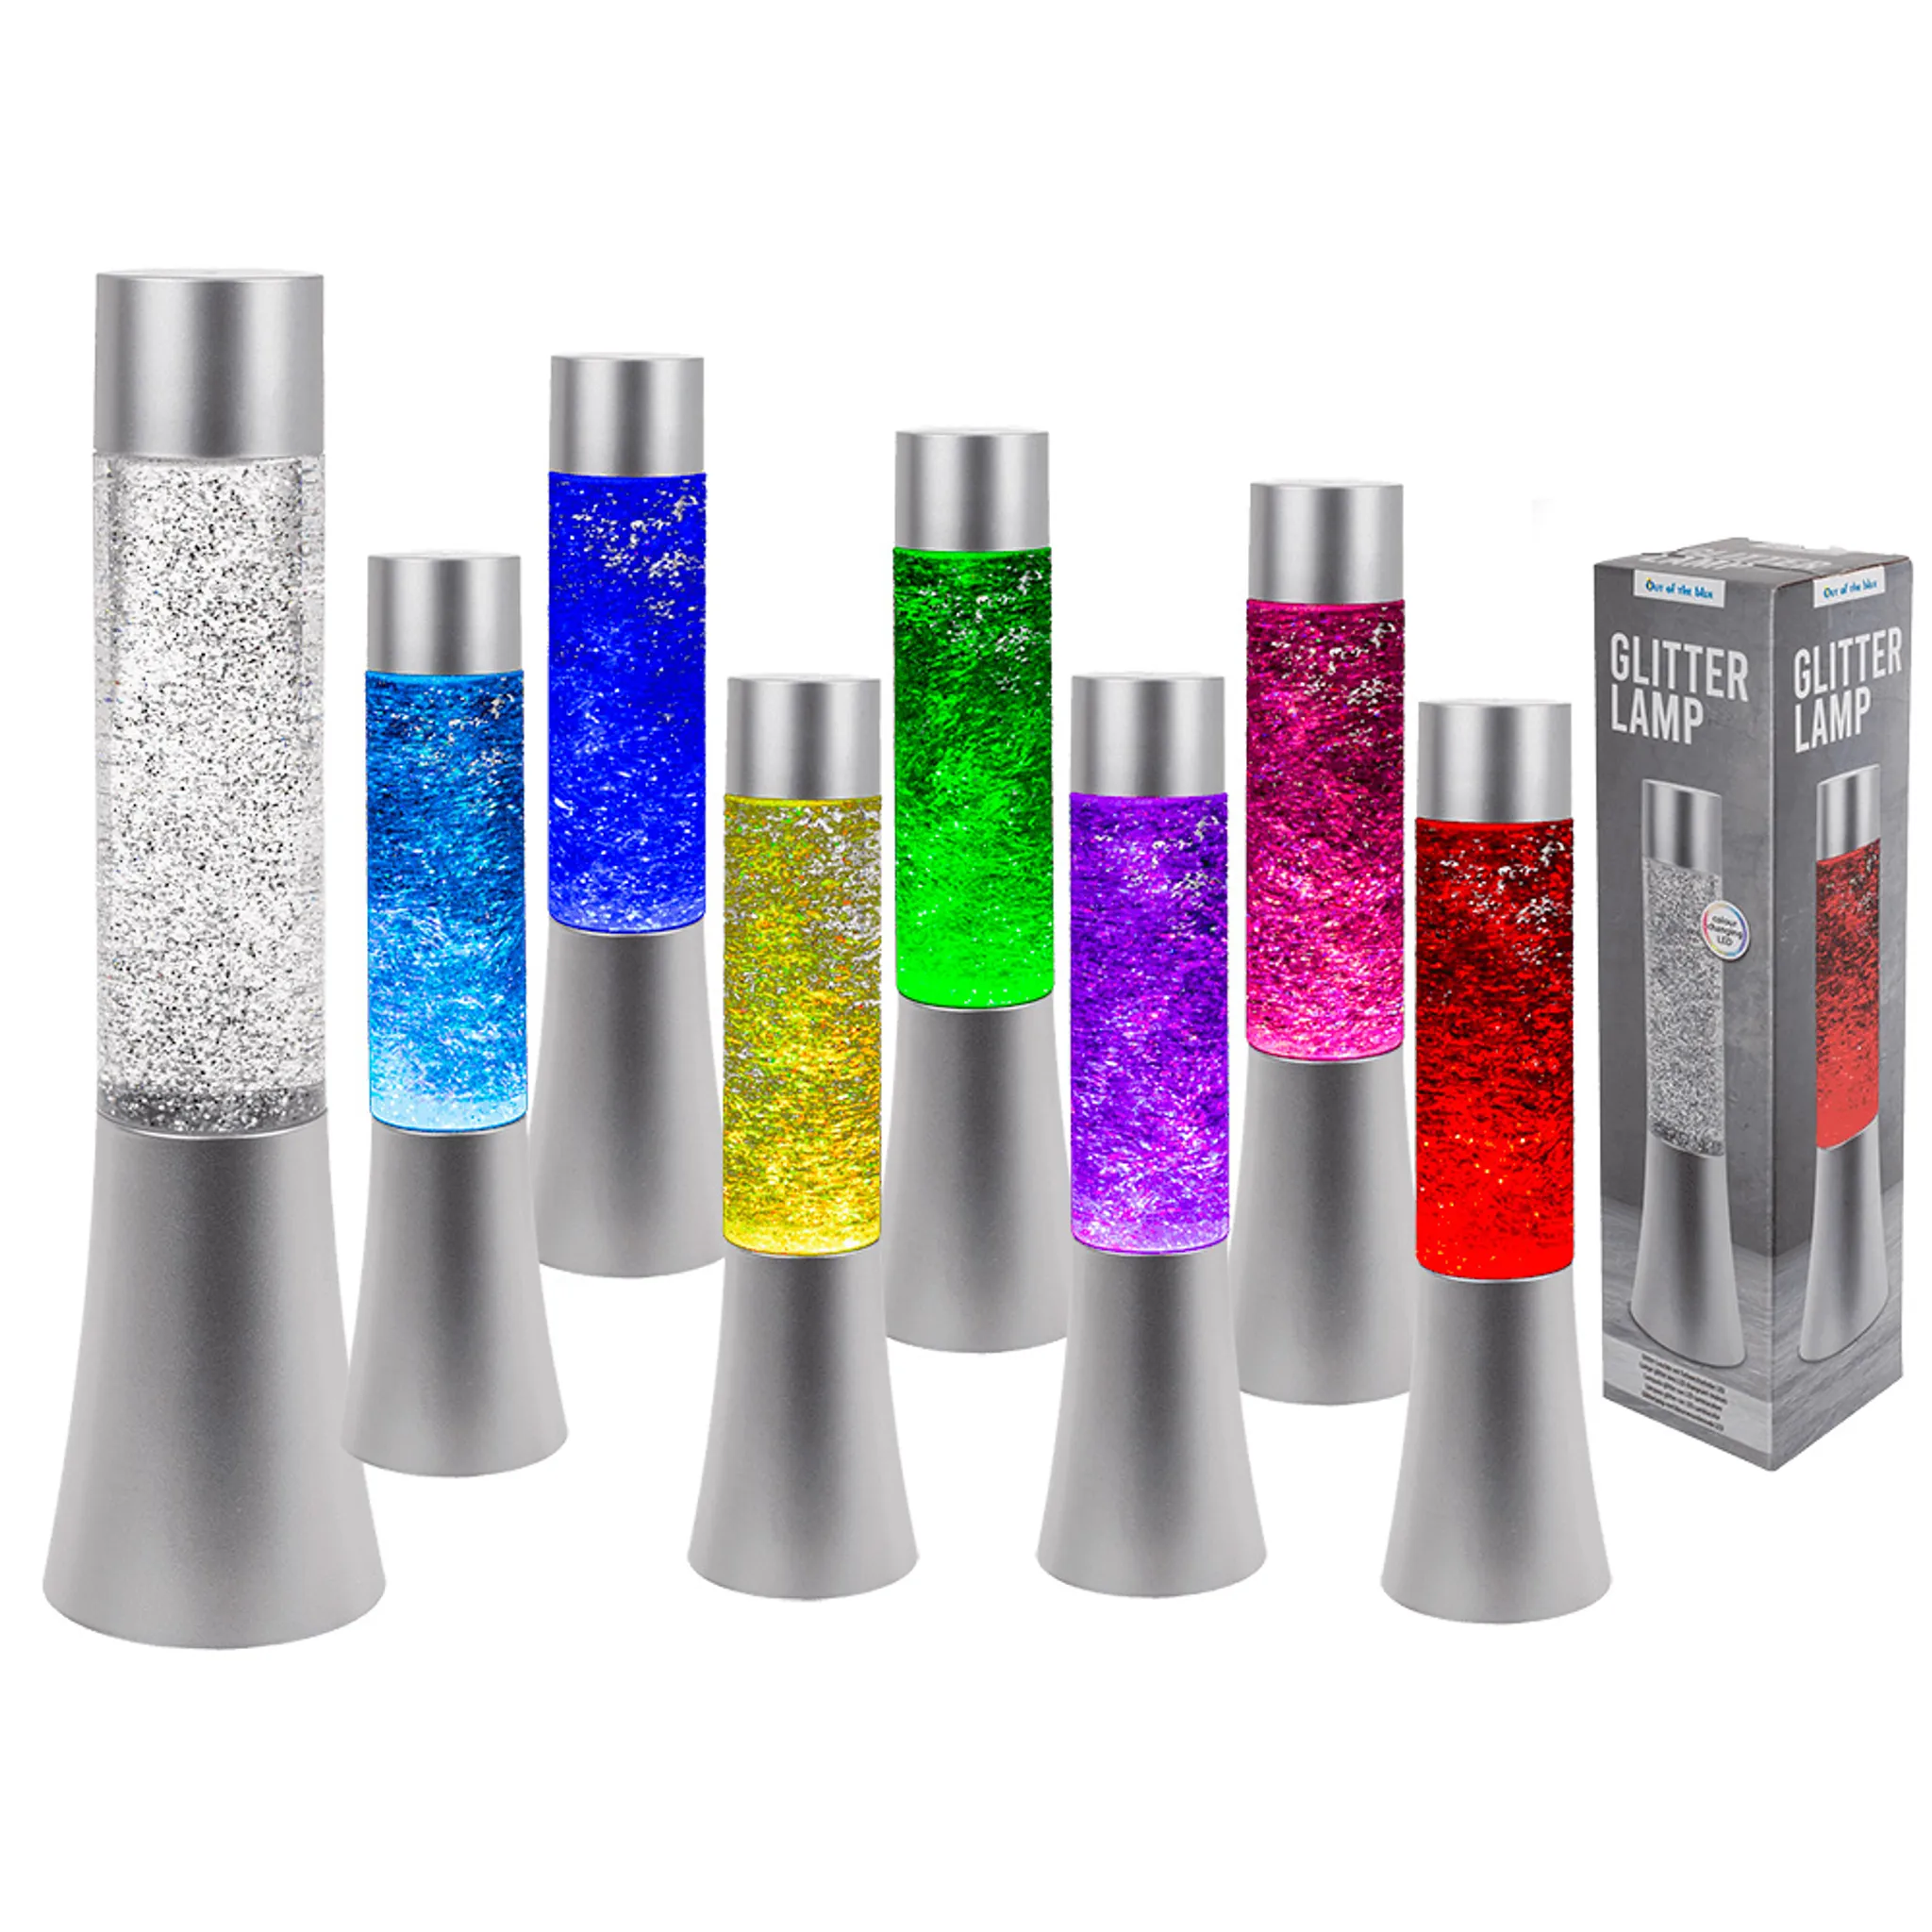 Glitter-Leuchte mit LED farbwechselnder